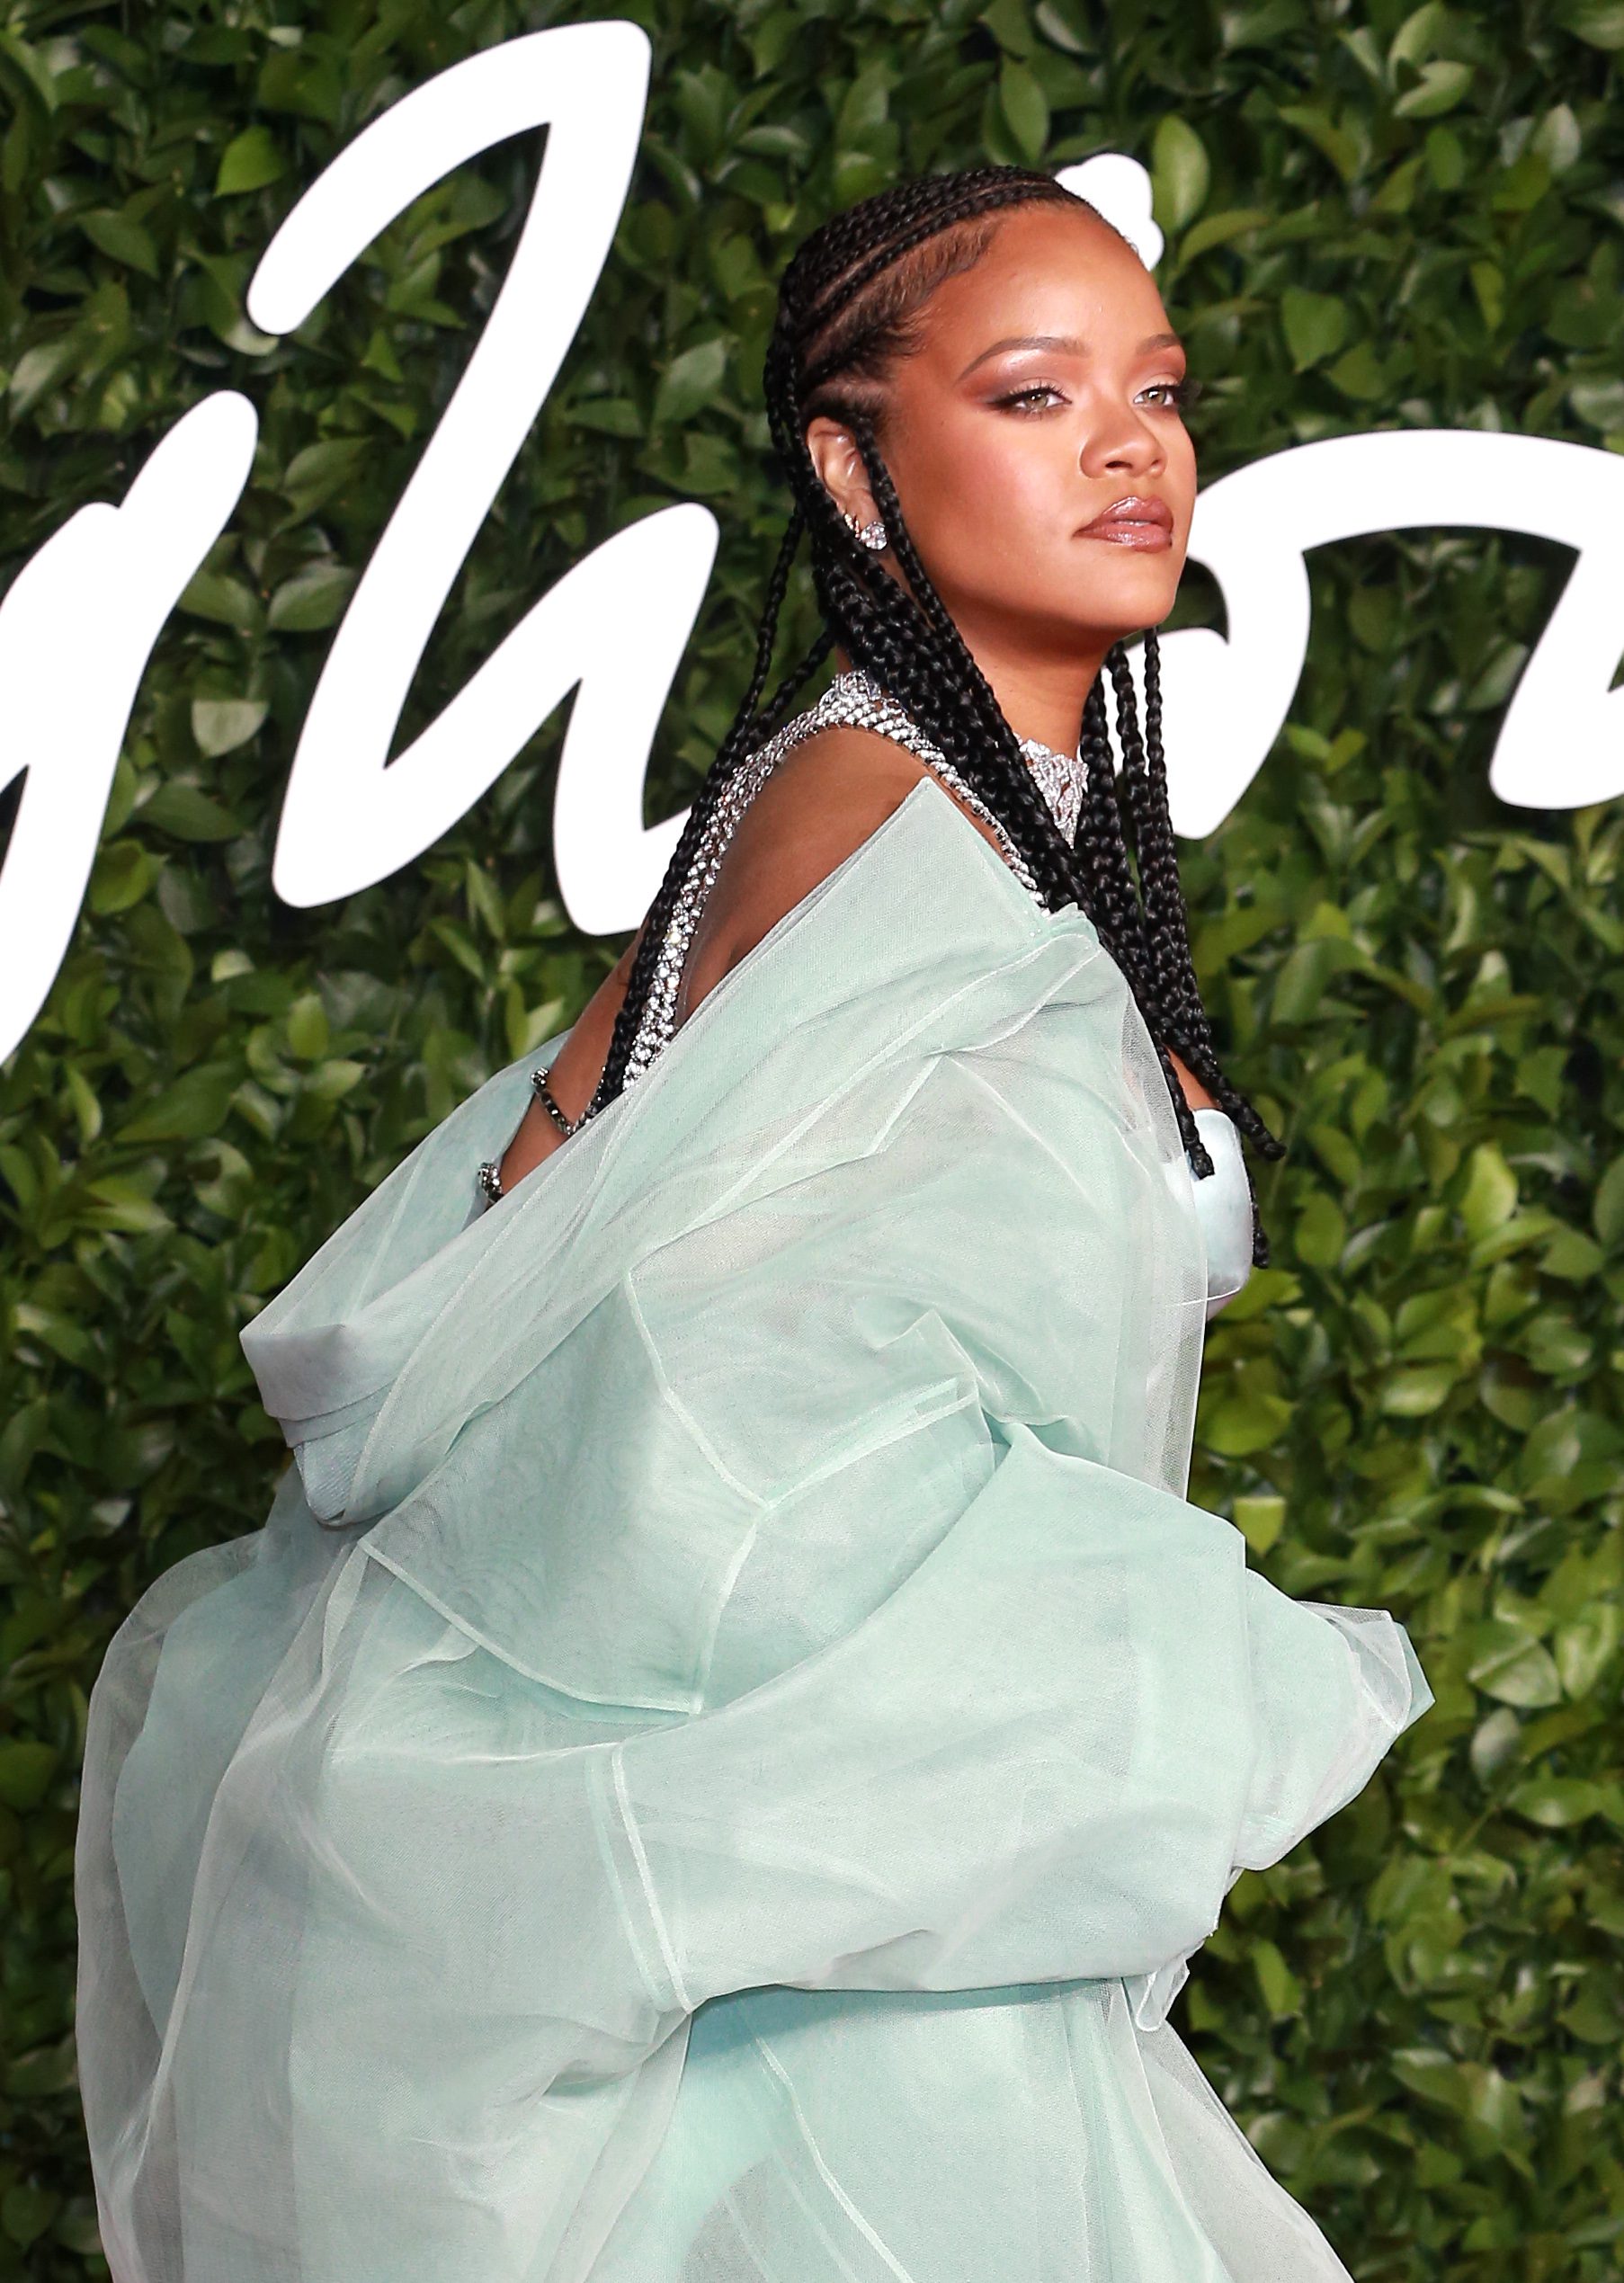 κλείνει ο οίκος μόδας της Rihanna